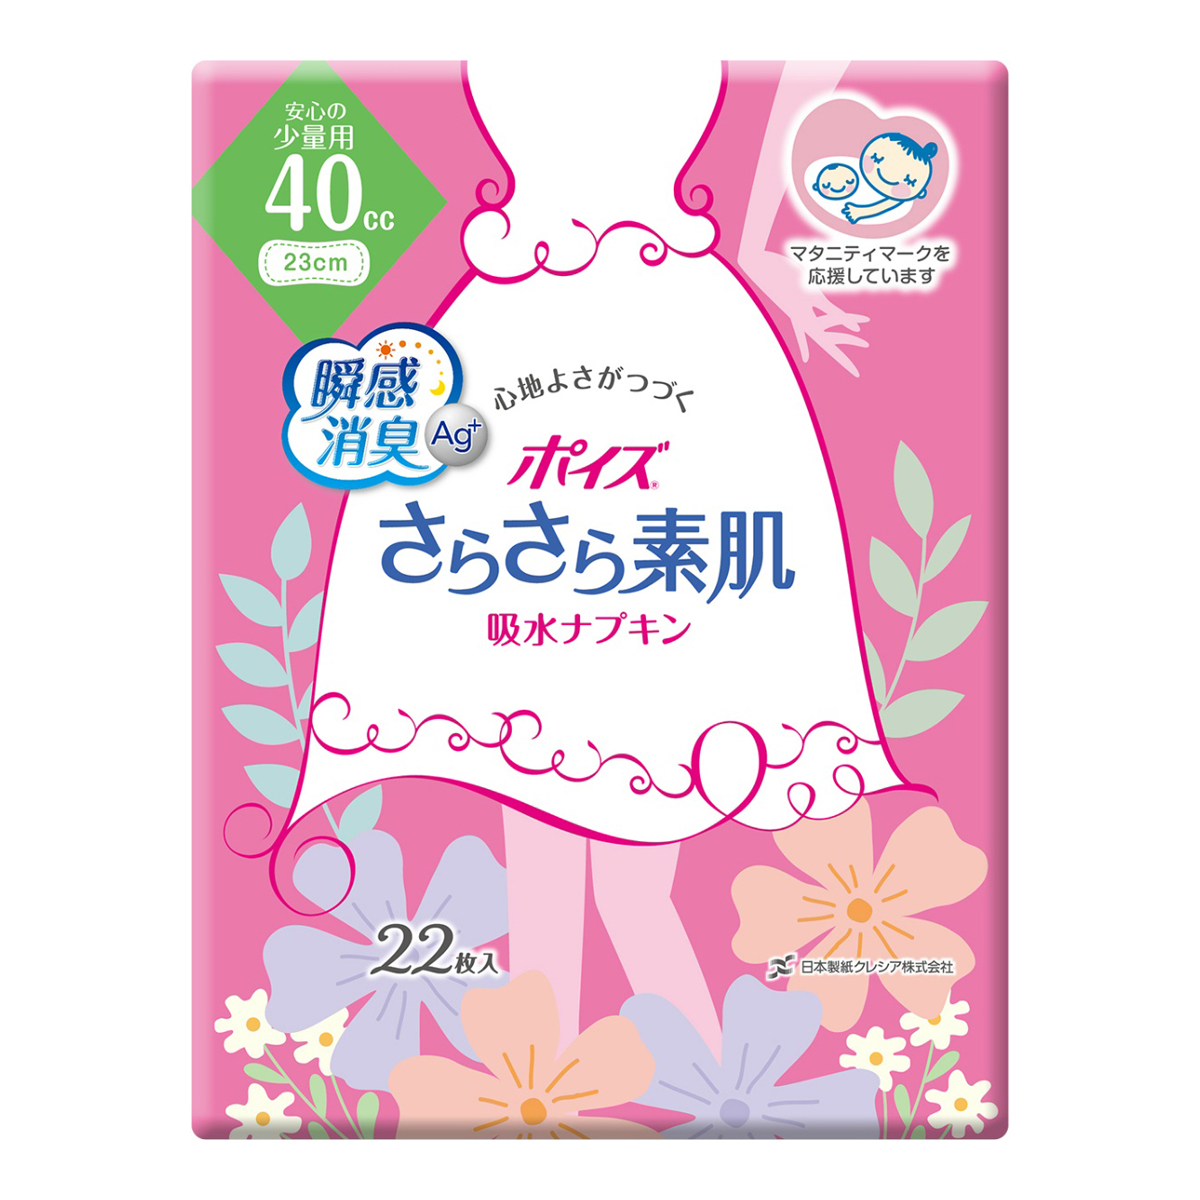 日本製紙クレシア ポイズ さらさら素肌 吸水ナプキン ポイズライナー 安心の少量用 40cc 22枚入